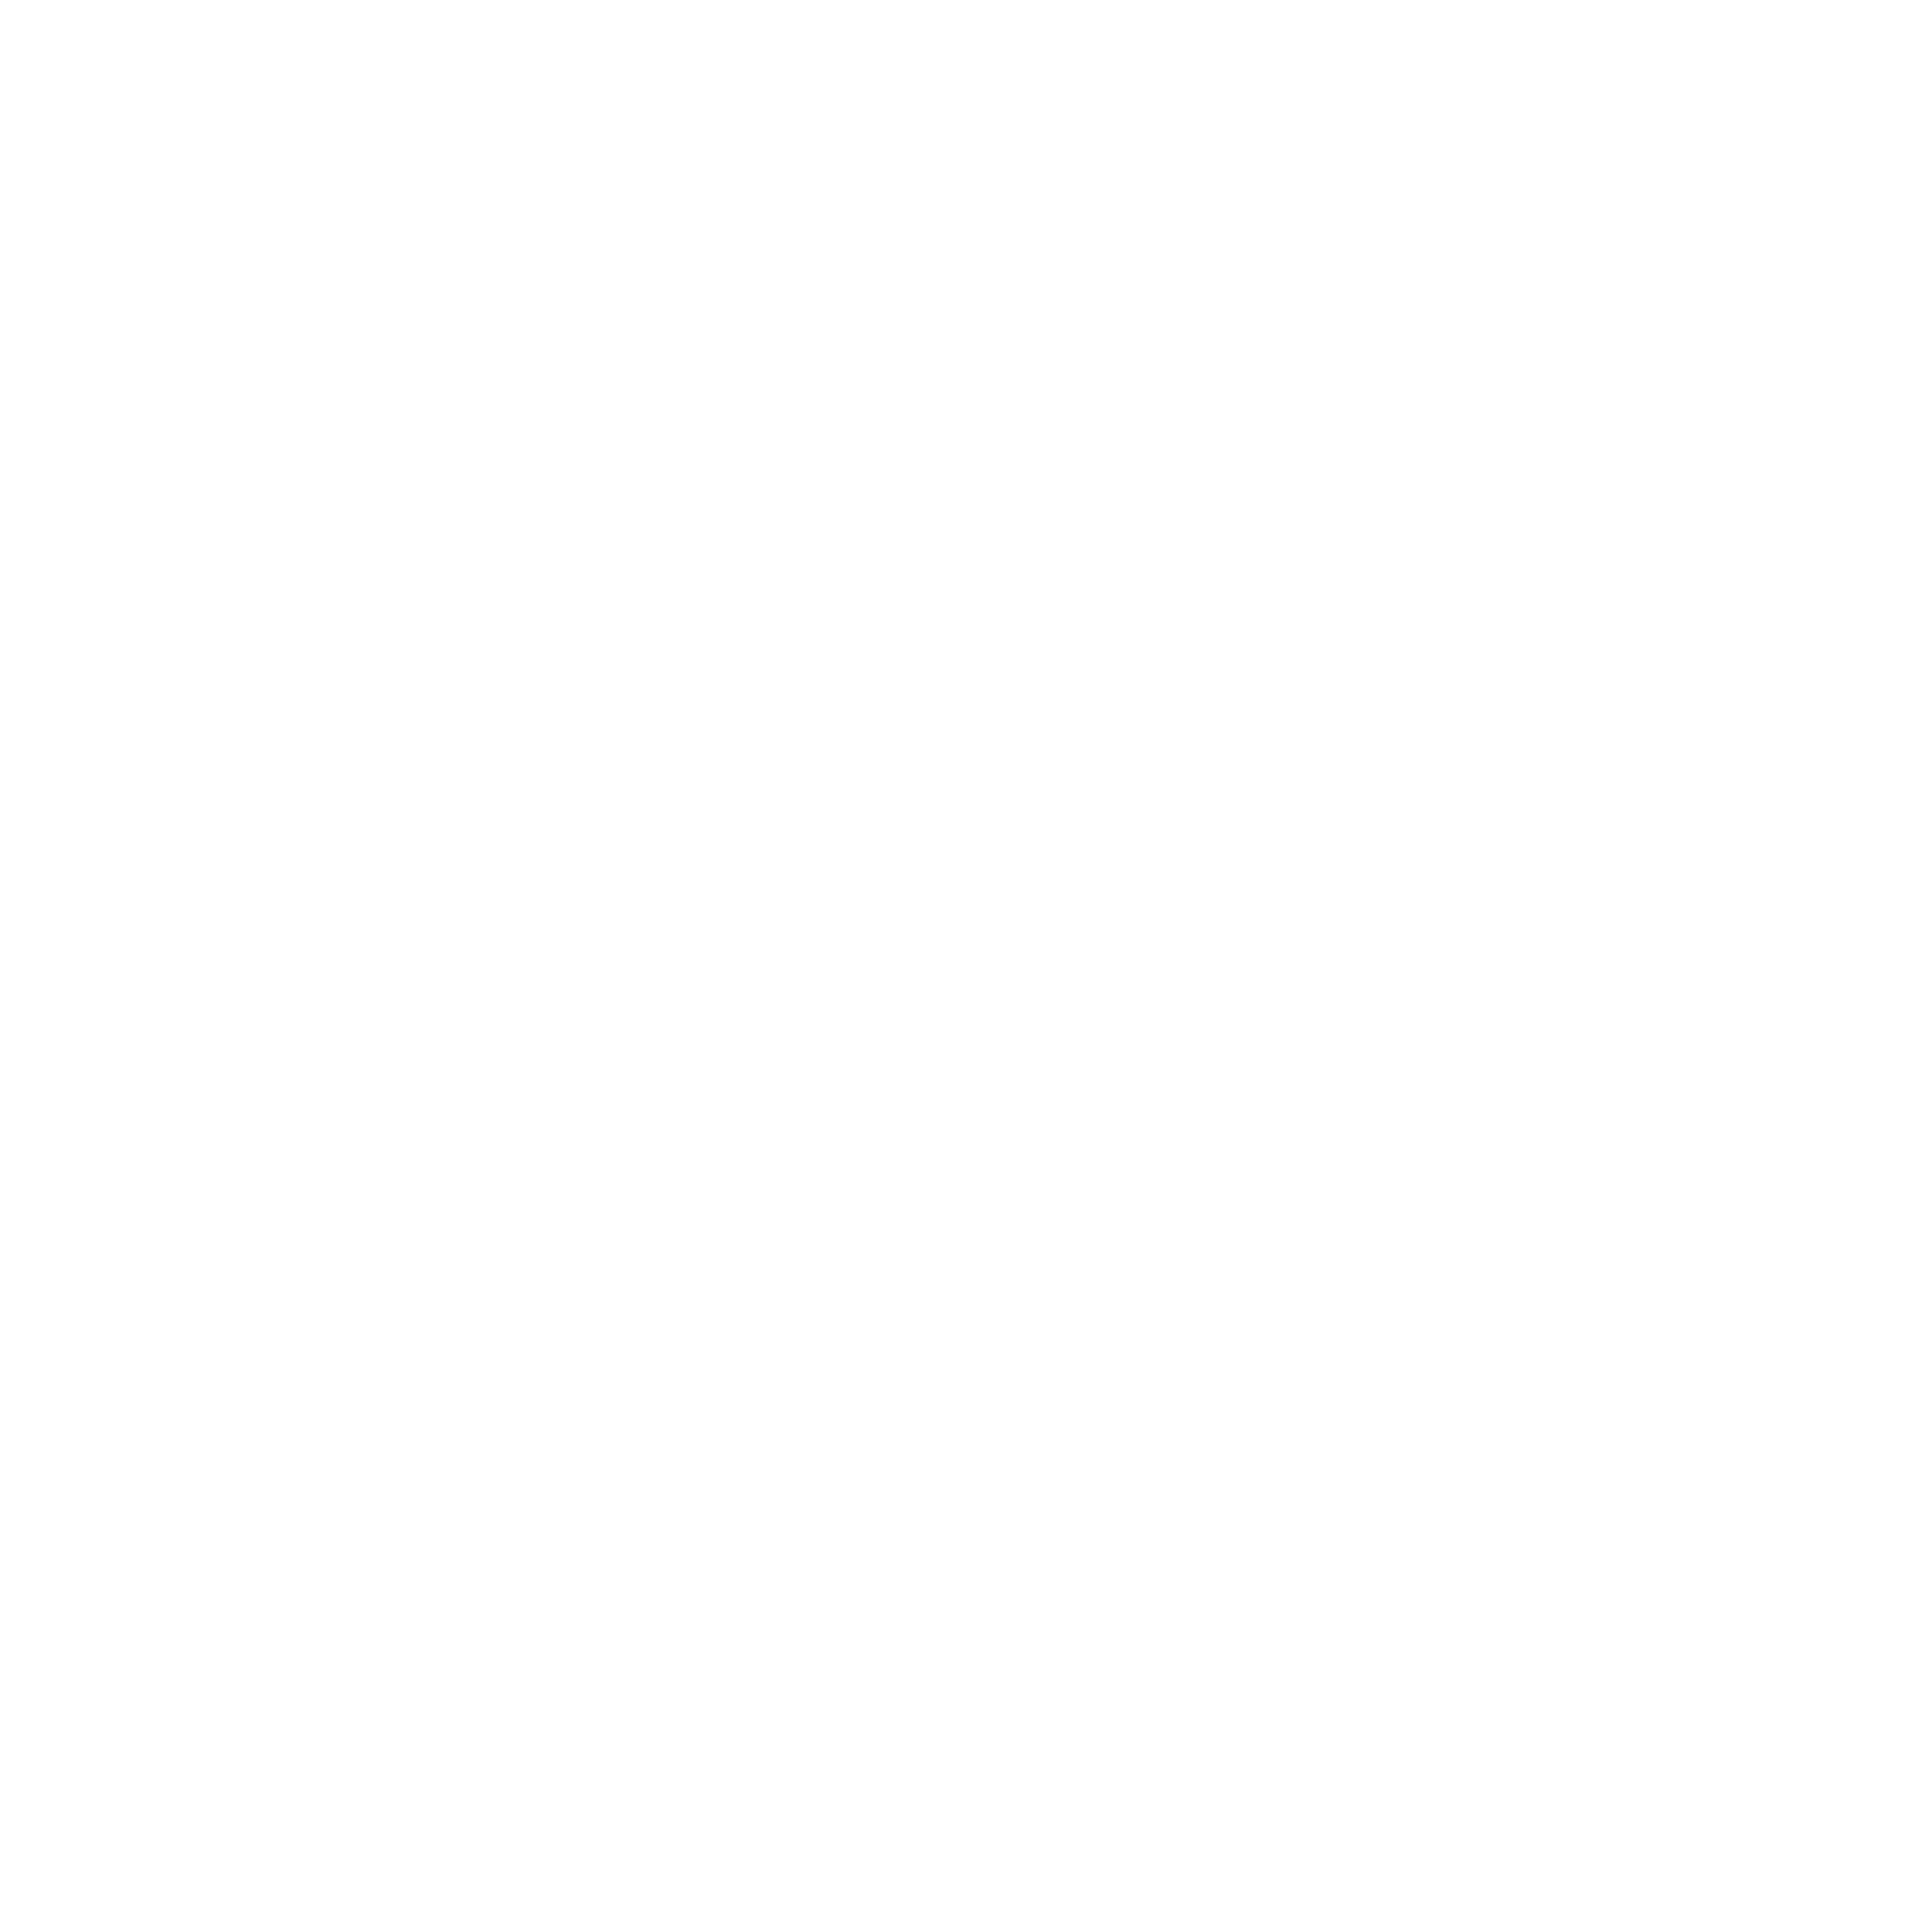 Estudio de interiorismo y diseño gráfico en Málaga y Marbella - Alameda Principal 33 - 3º - 29001 - Málaga